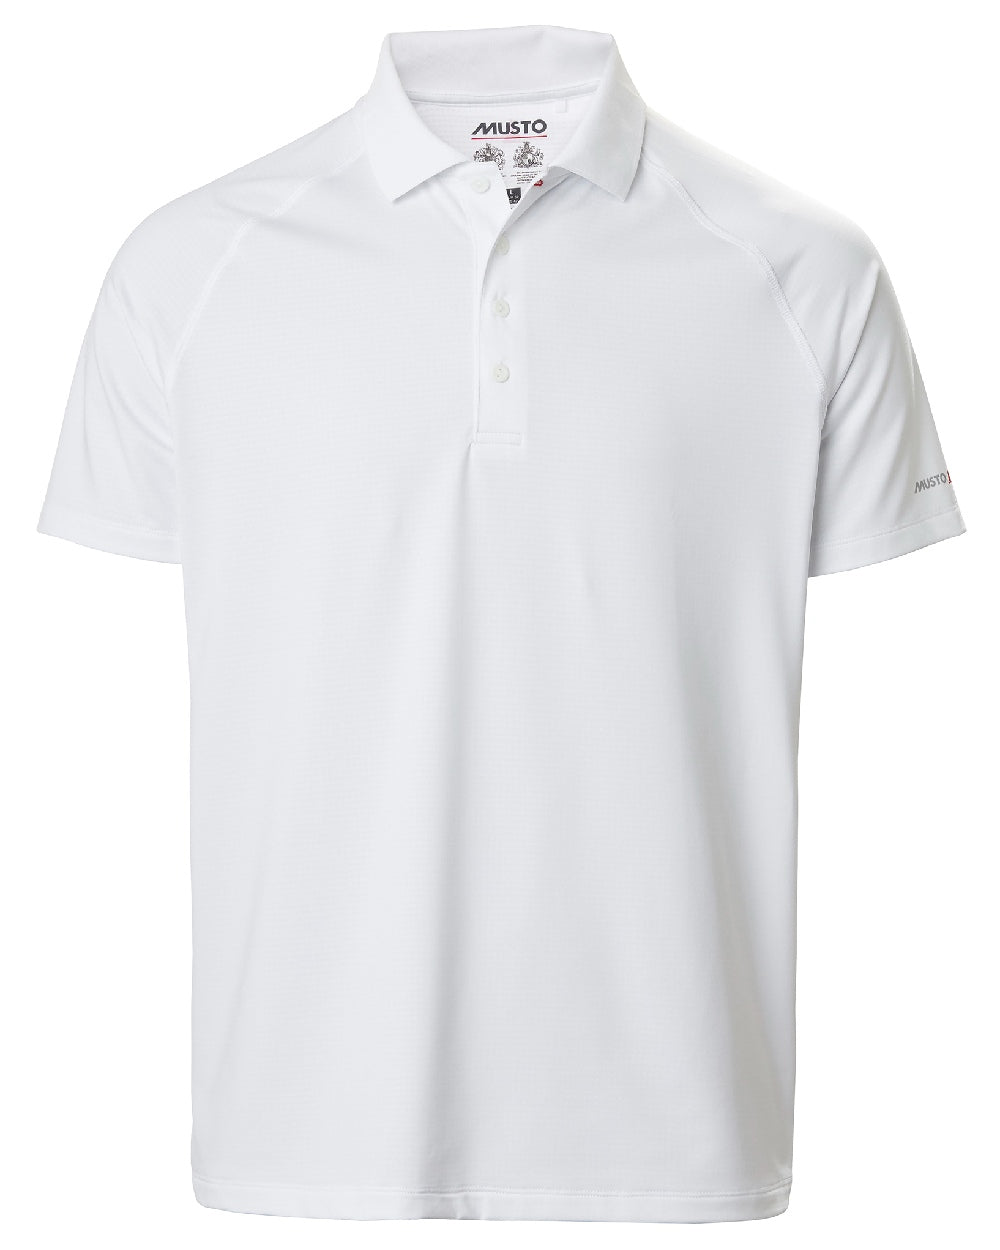 Musto Evolution Sunblock Short Sleeved Polo Shirt in White 